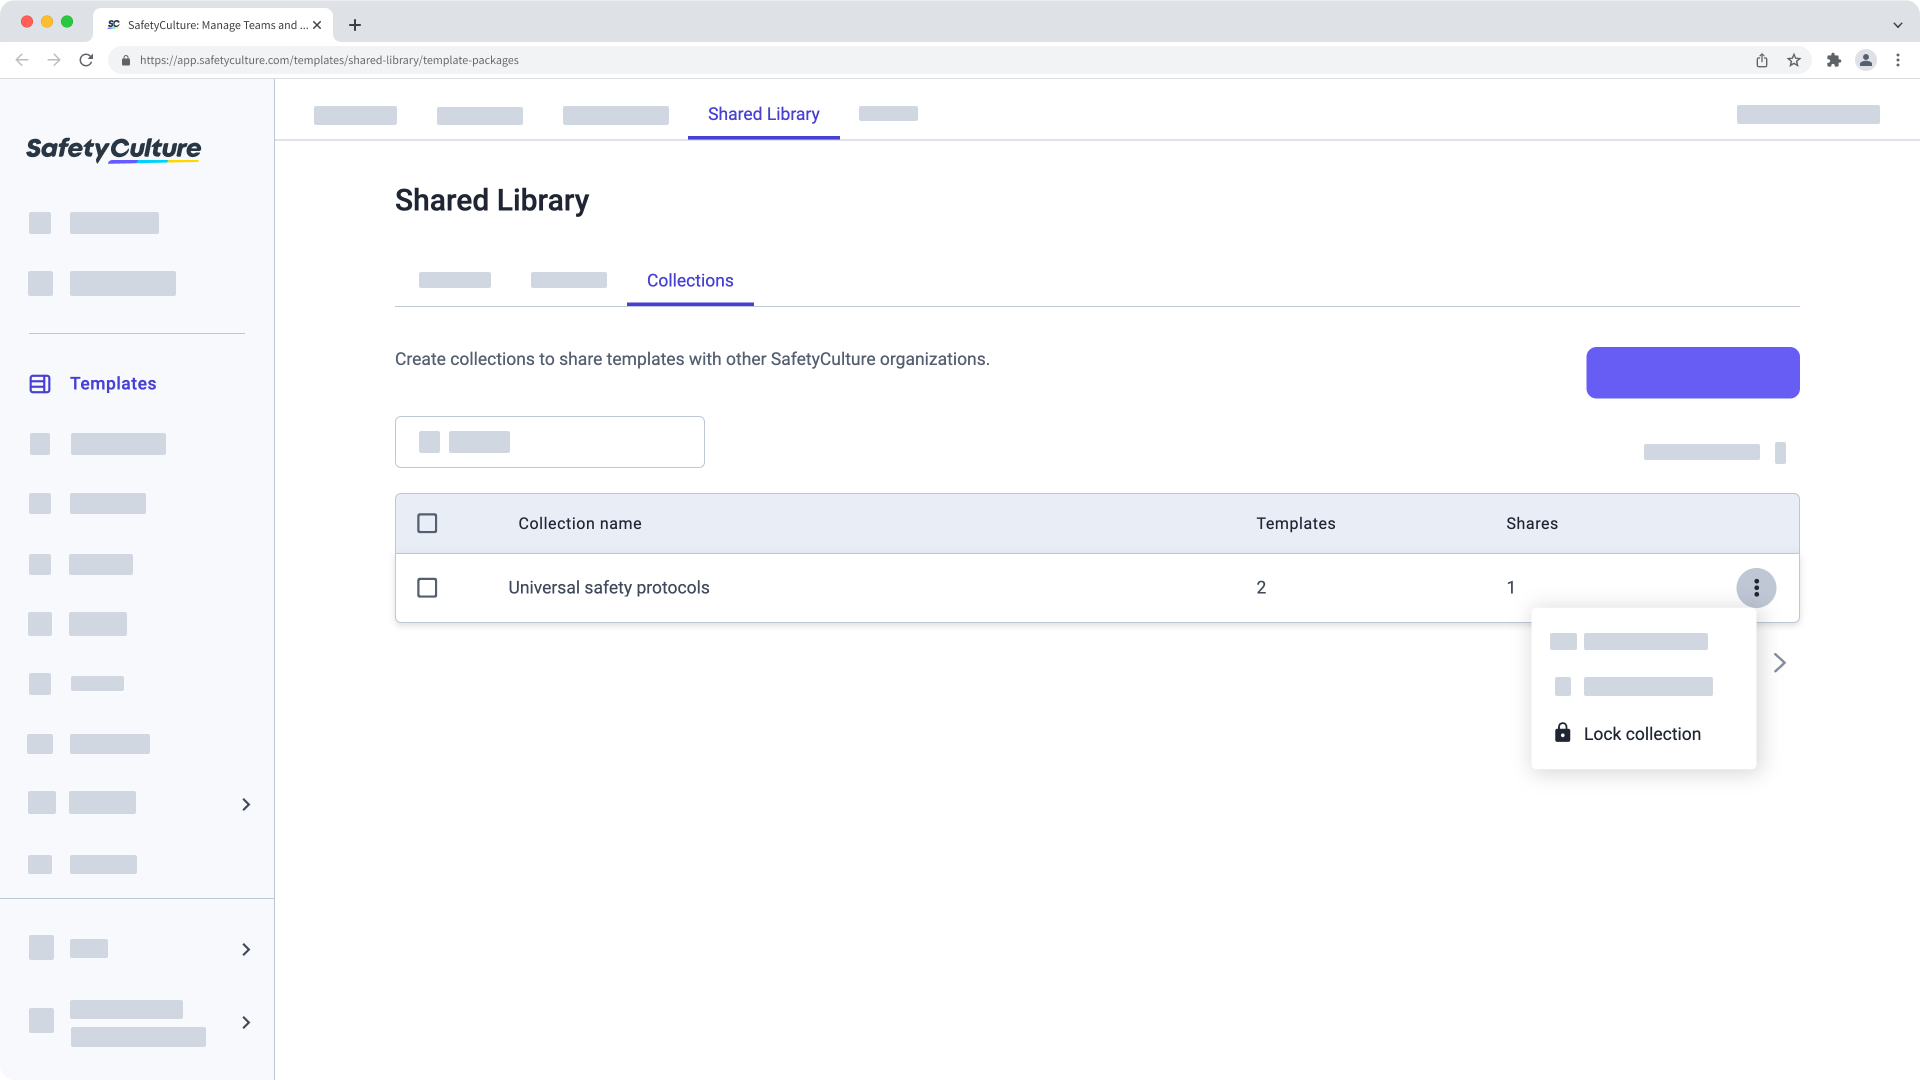 Verrouillez une collection de modèles de la Bibliothèque partagée à partir de l'application Web.
